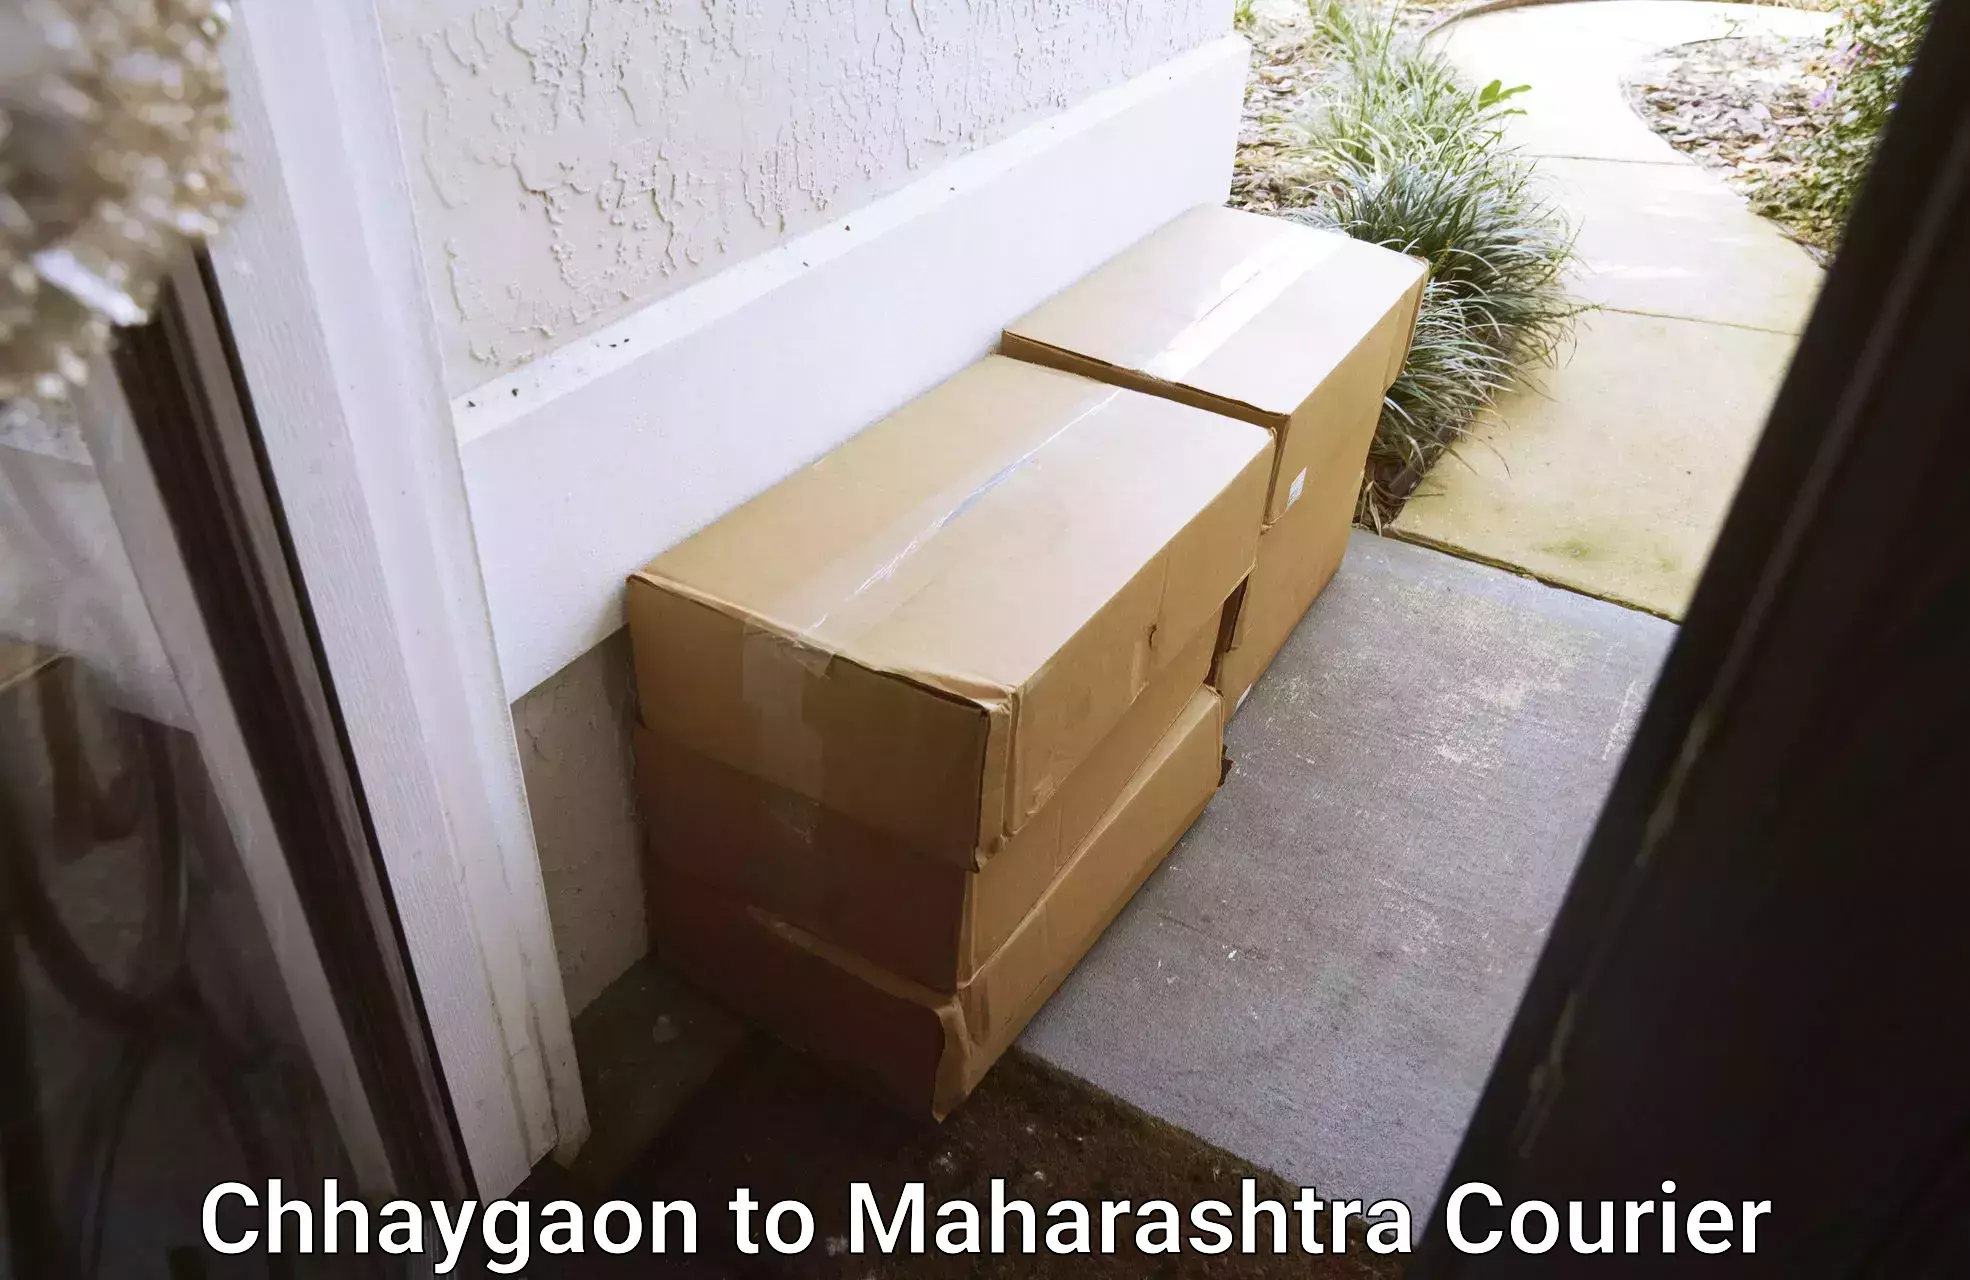 Bulk shipment Chhaygaon to Pusad